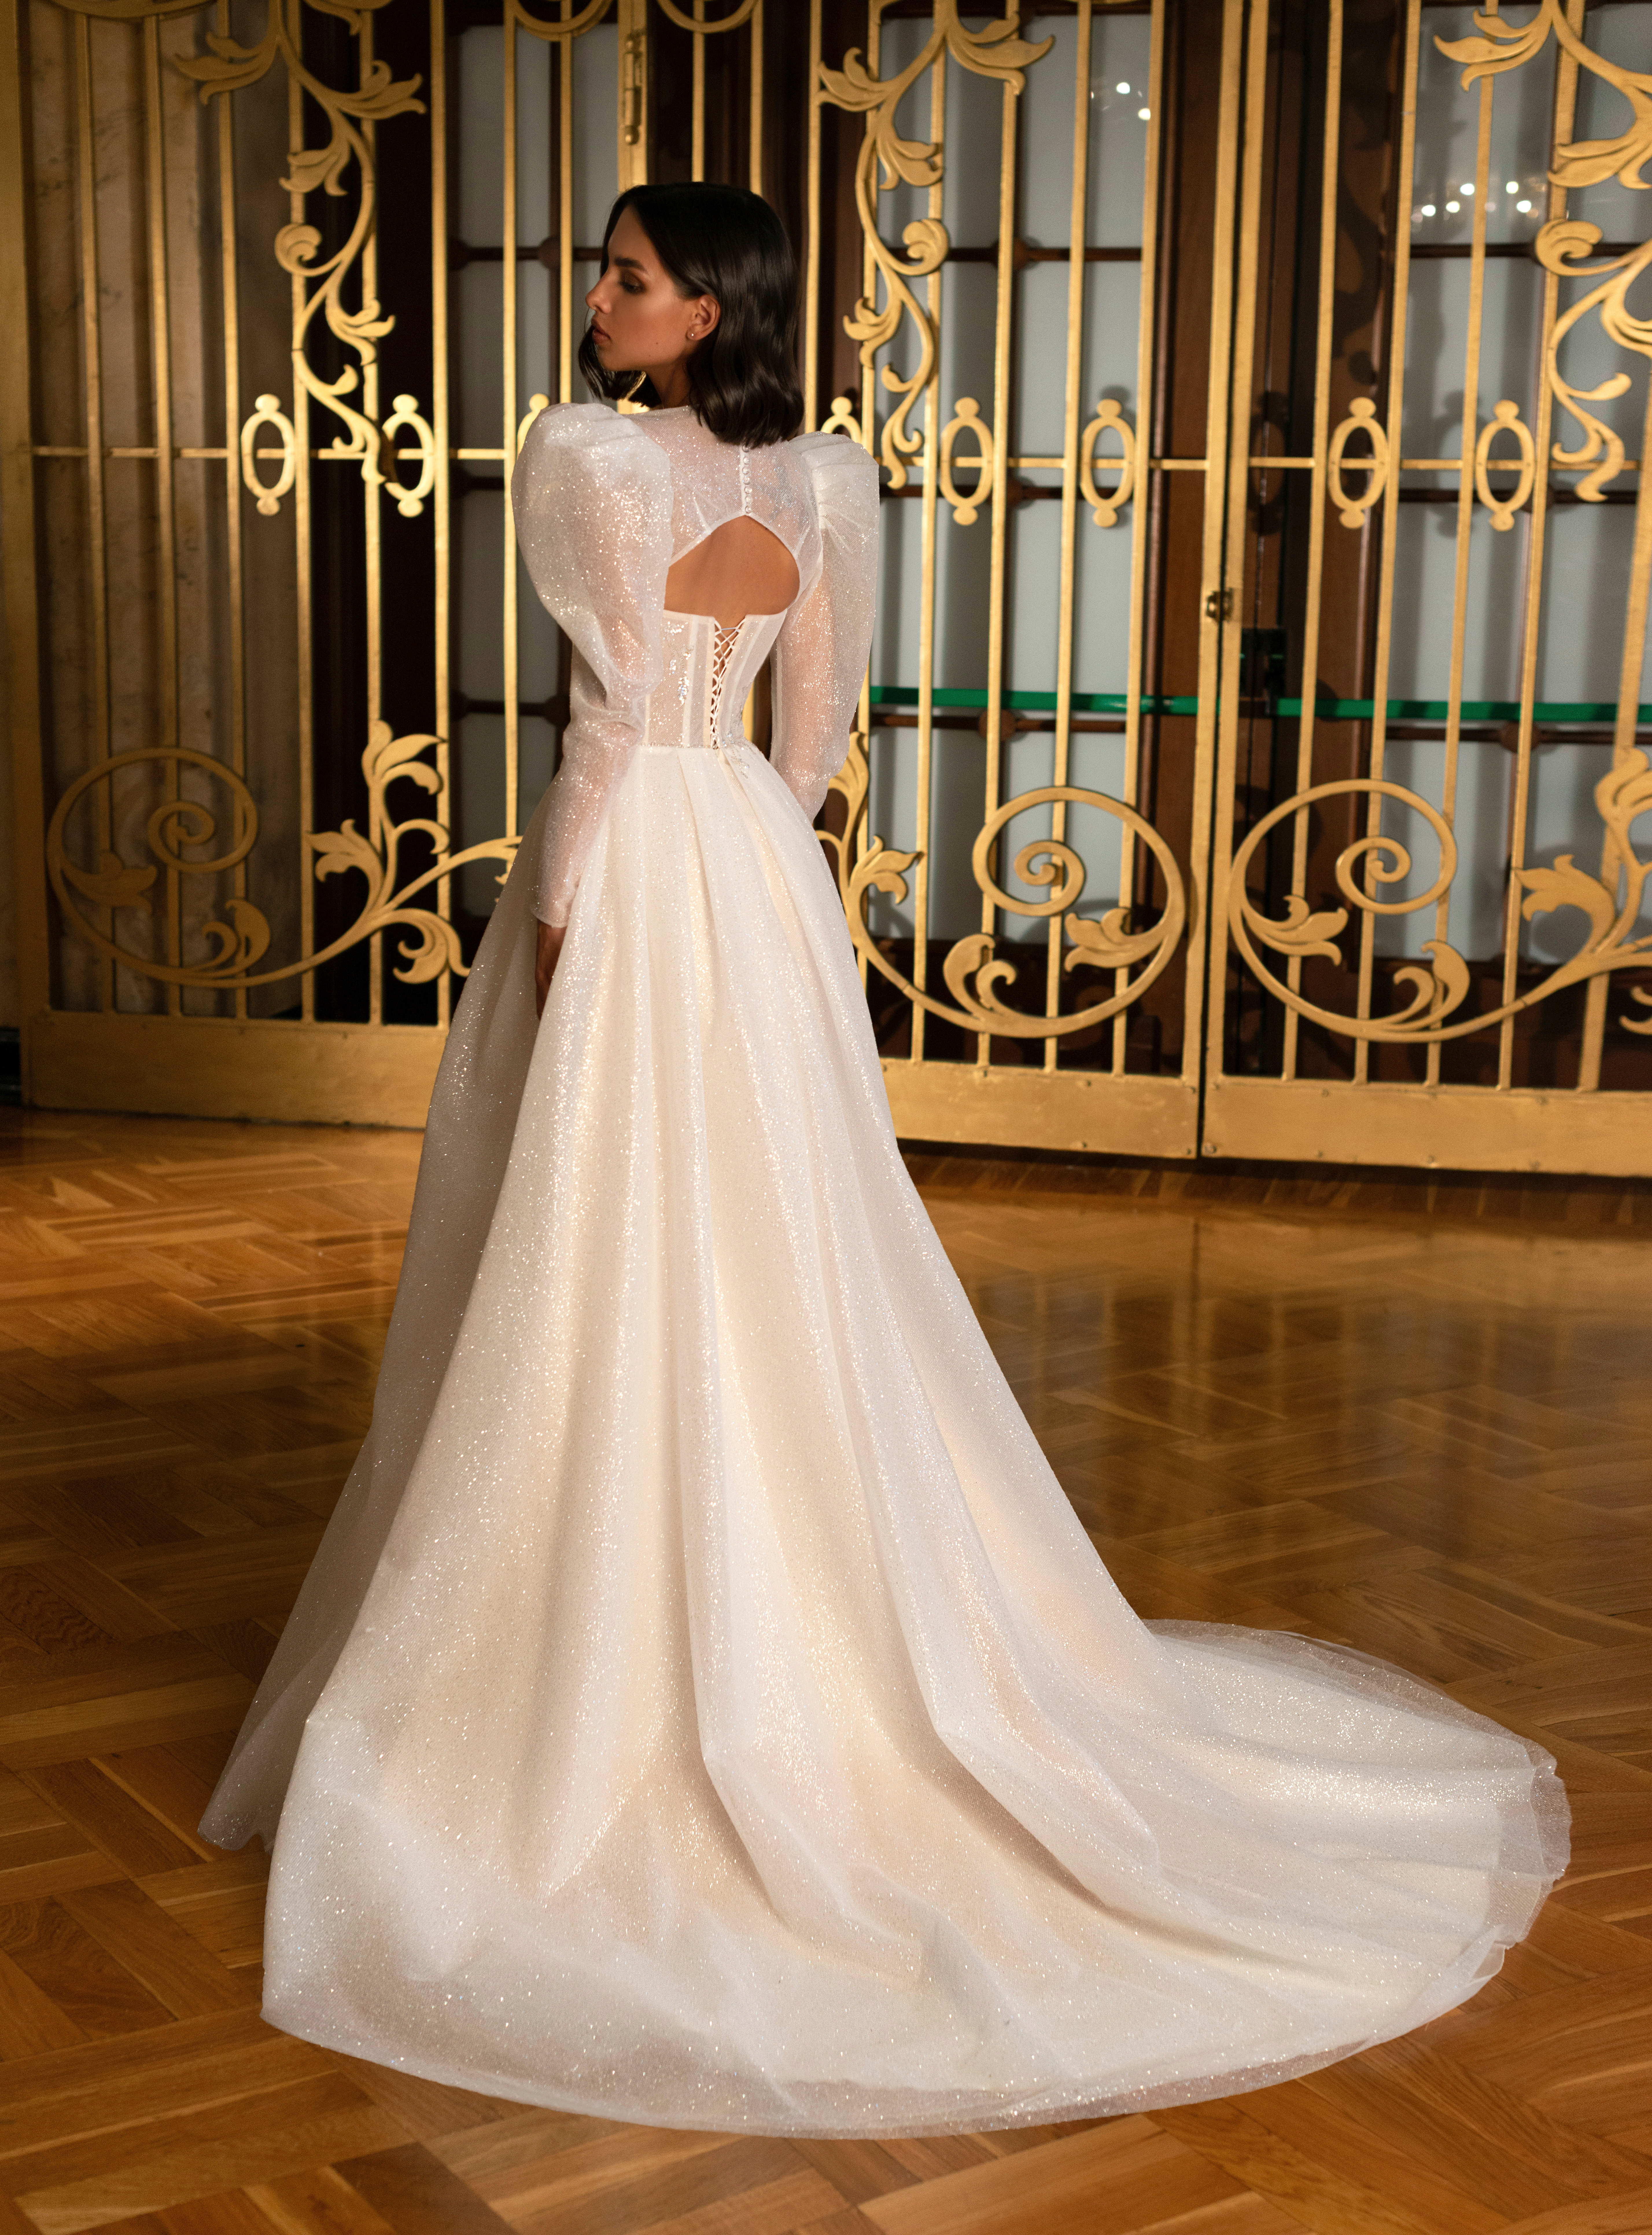 Купить свадебное платье «Верна» Мэрри Марк из коллекции Бриллиант 2022 года в салоне «Мэри Трюфель»